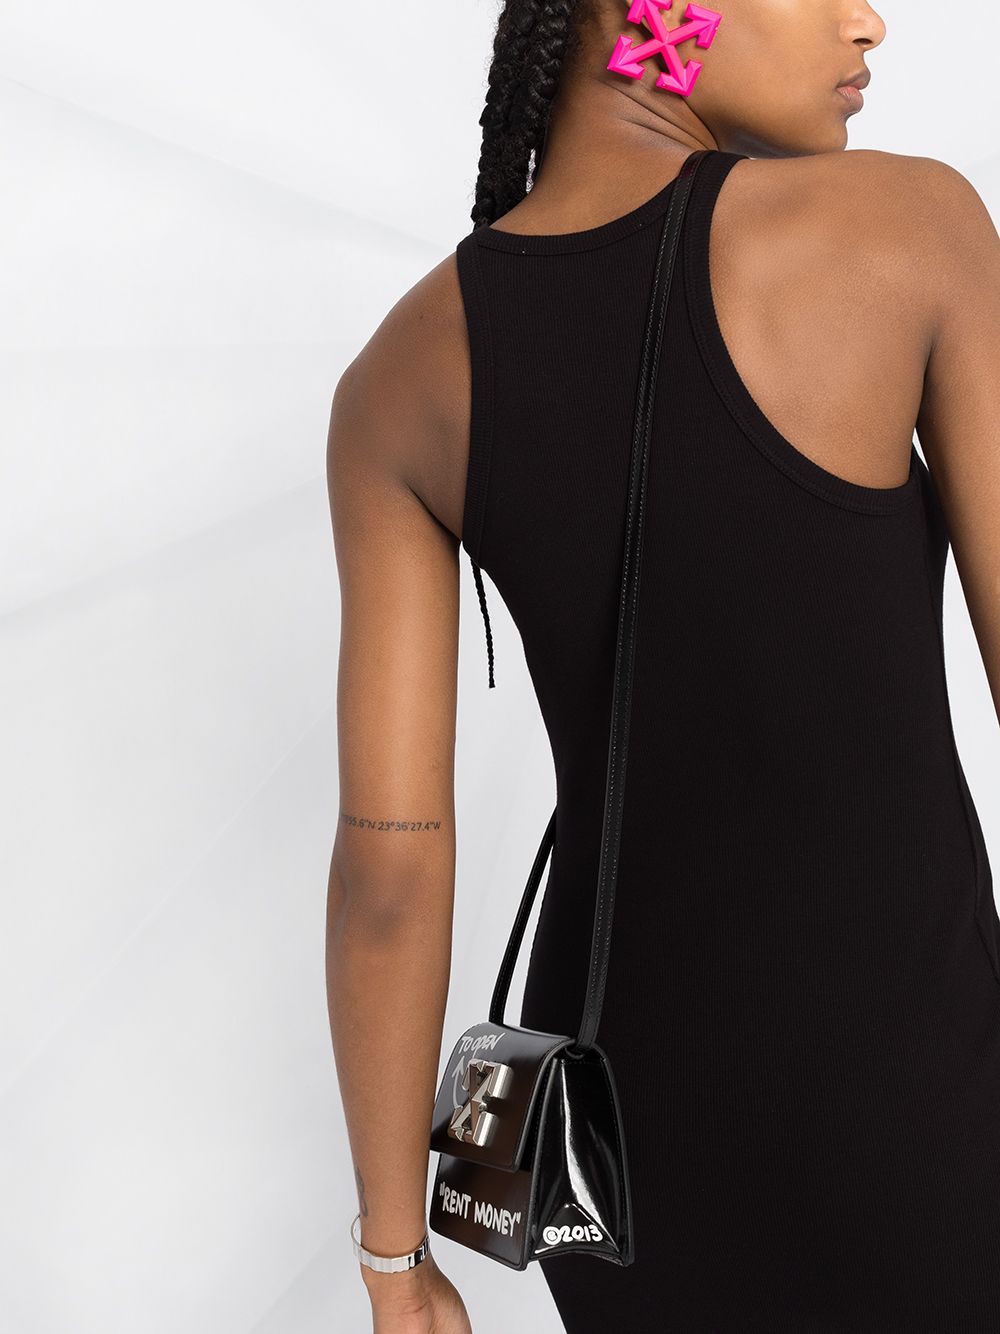 OFF-WHITE WOMEN Basic Ribbed Dress Black - MAISONDEFASHION.COM